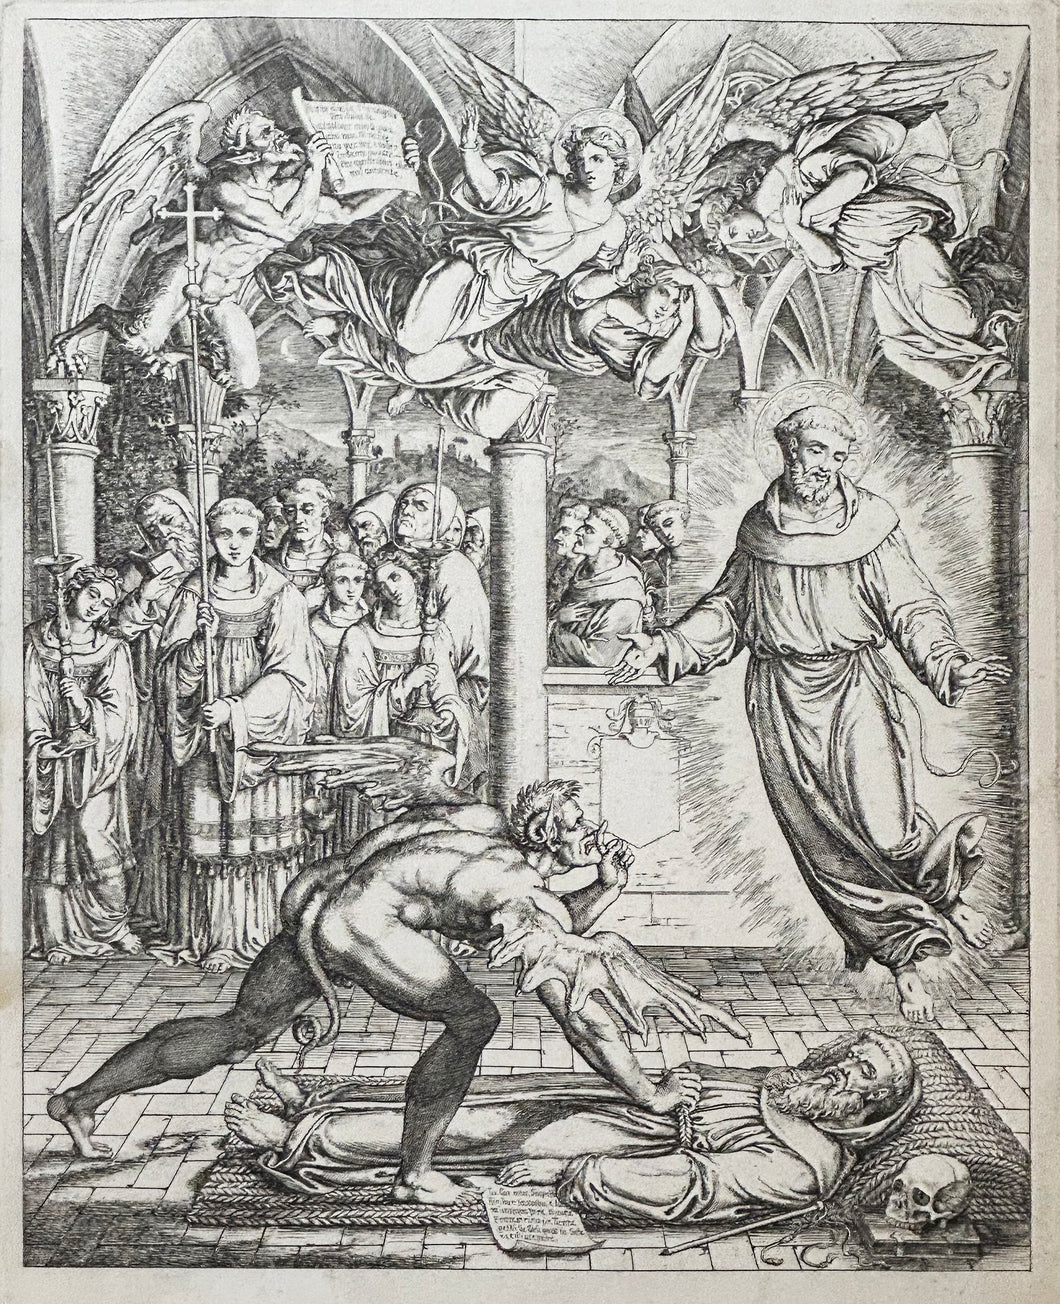 La lutte entre le Diable et Saint François d'Assise pour l'âme de Guido da Montefeltro.  1807-1808.